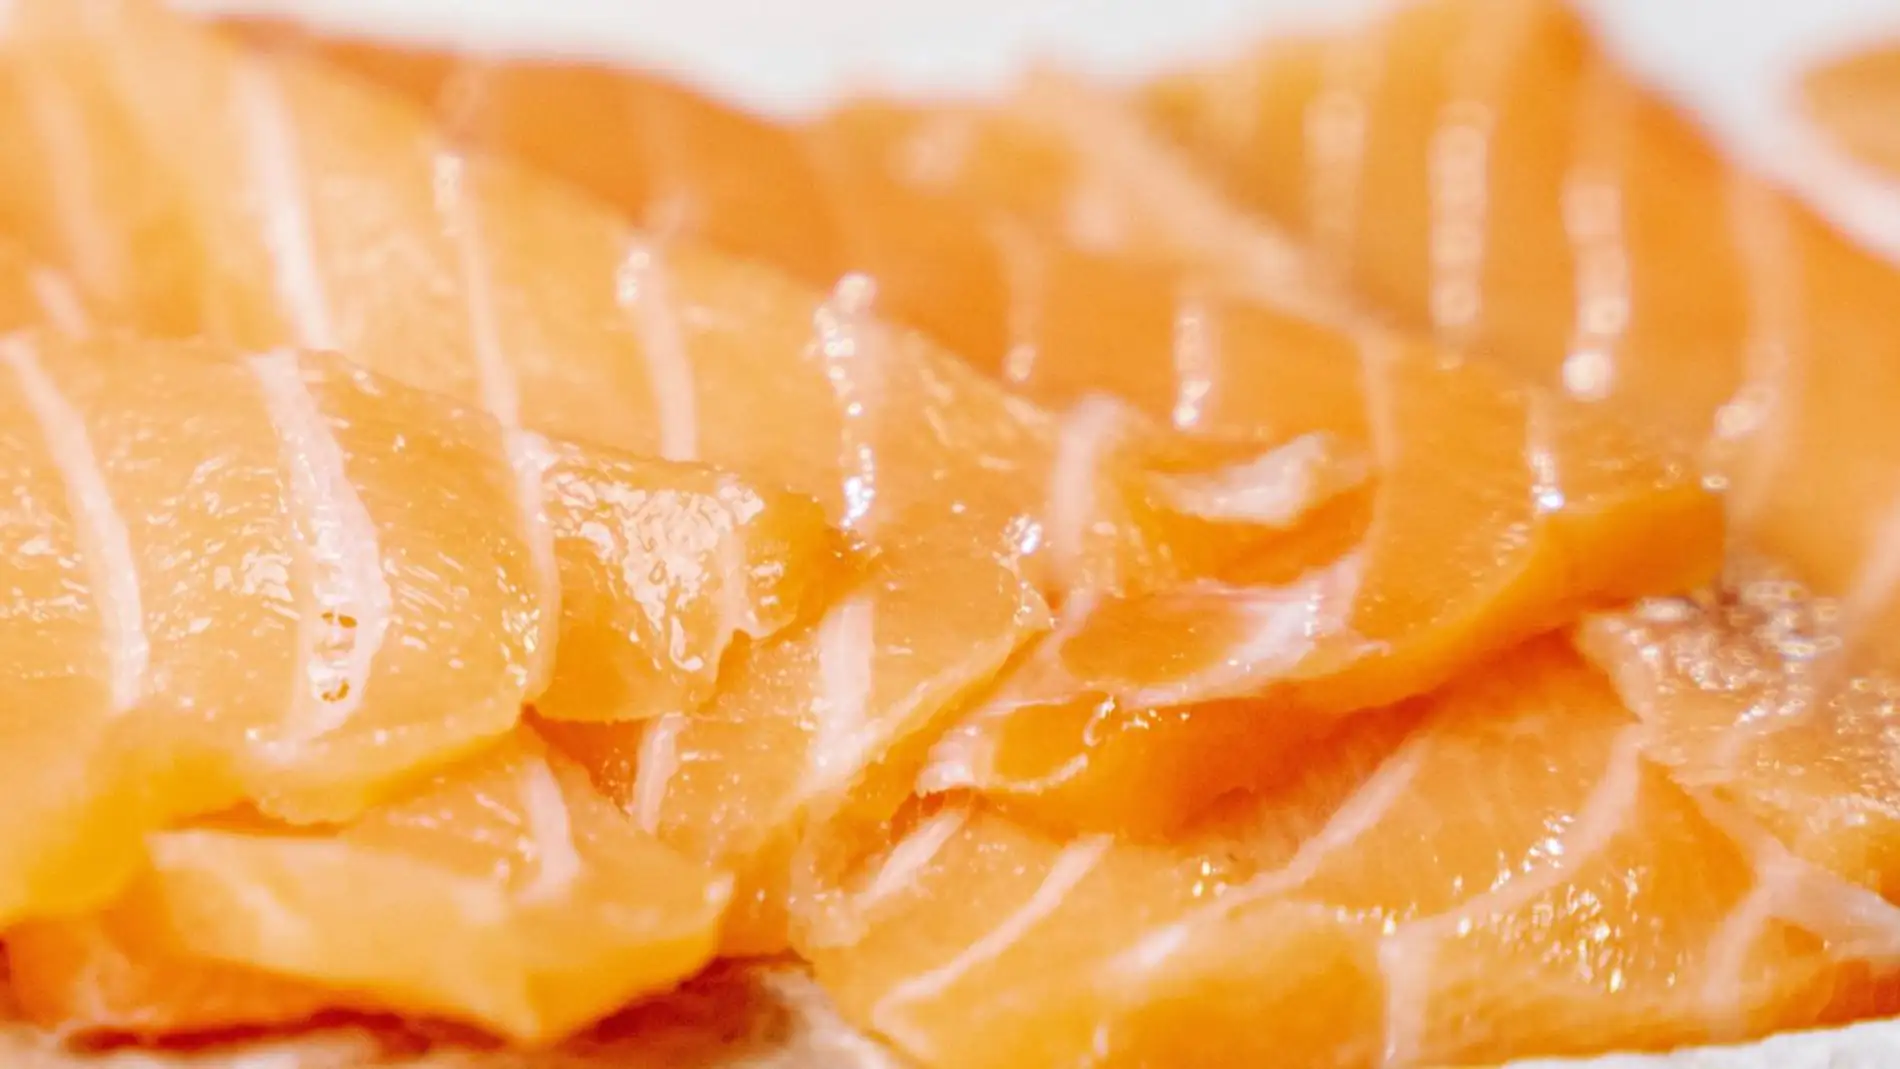 Alerta alimentaria por la presencia de listeria en salmón ahumado distribuido en cinco comunidades